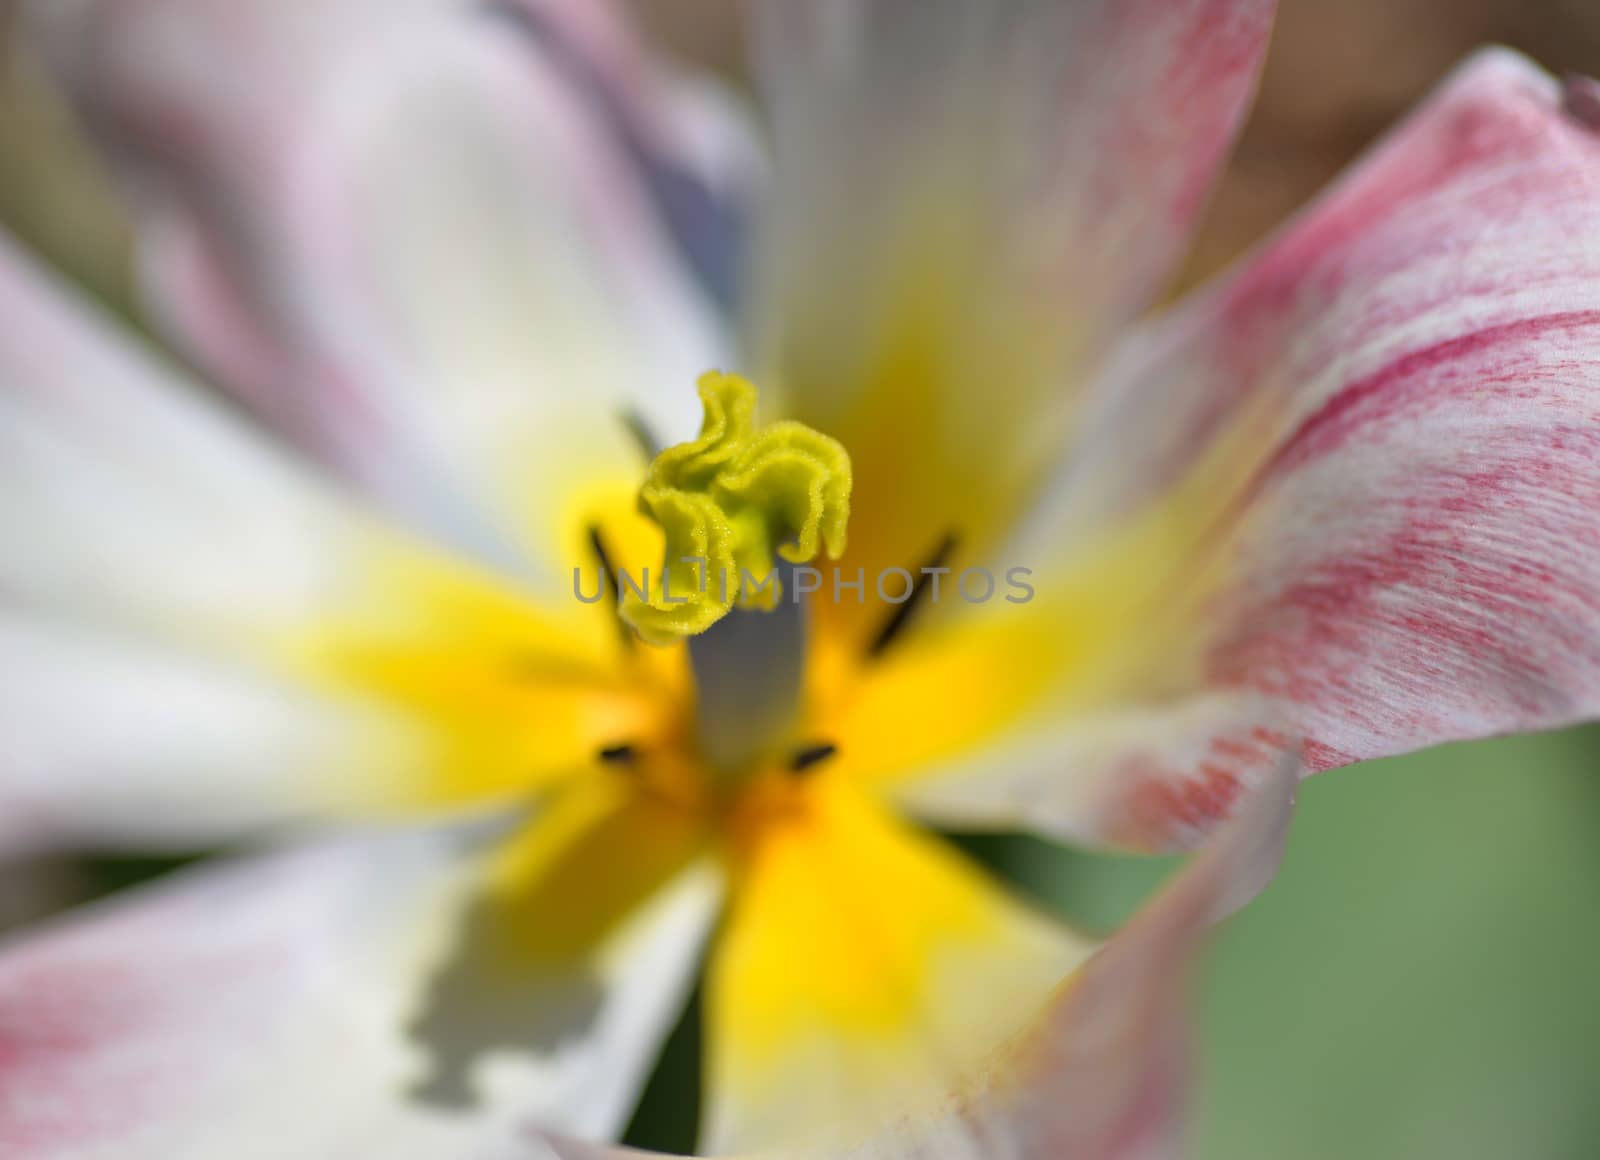 pink tulip flower by nikonite